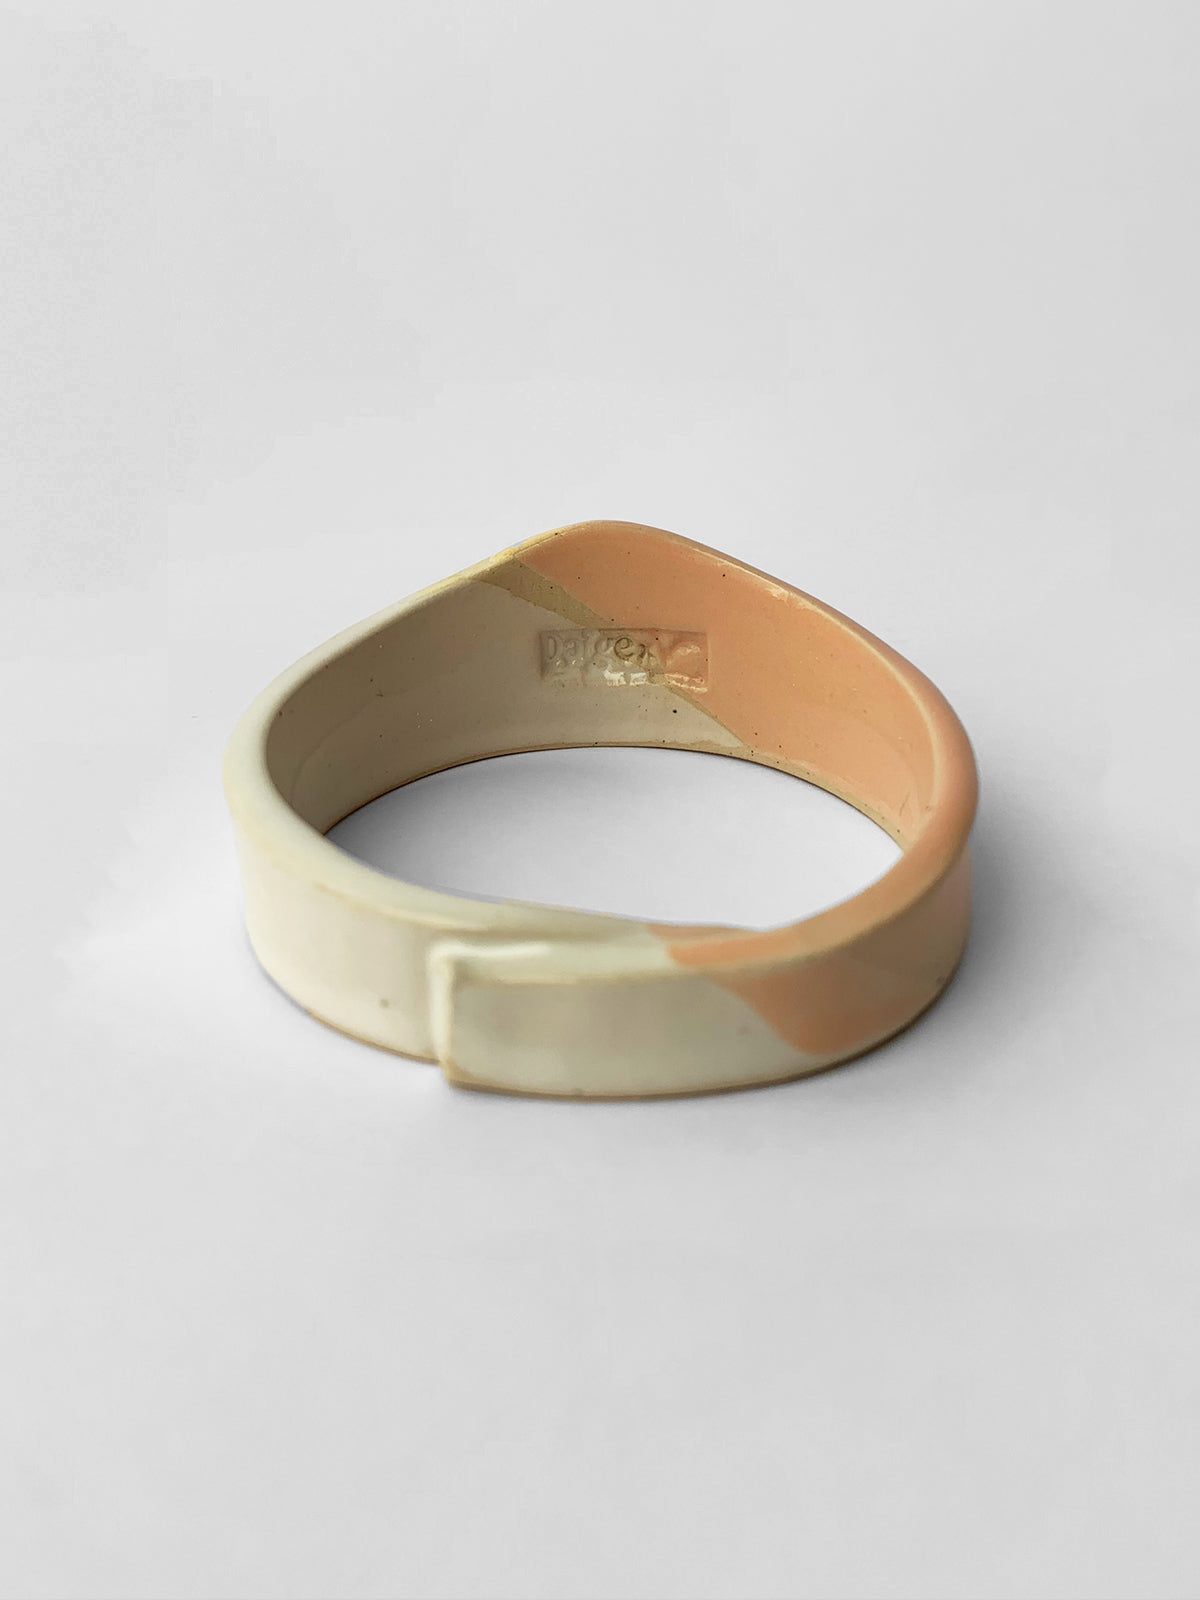 GAMILA ceramic cuff bracelet